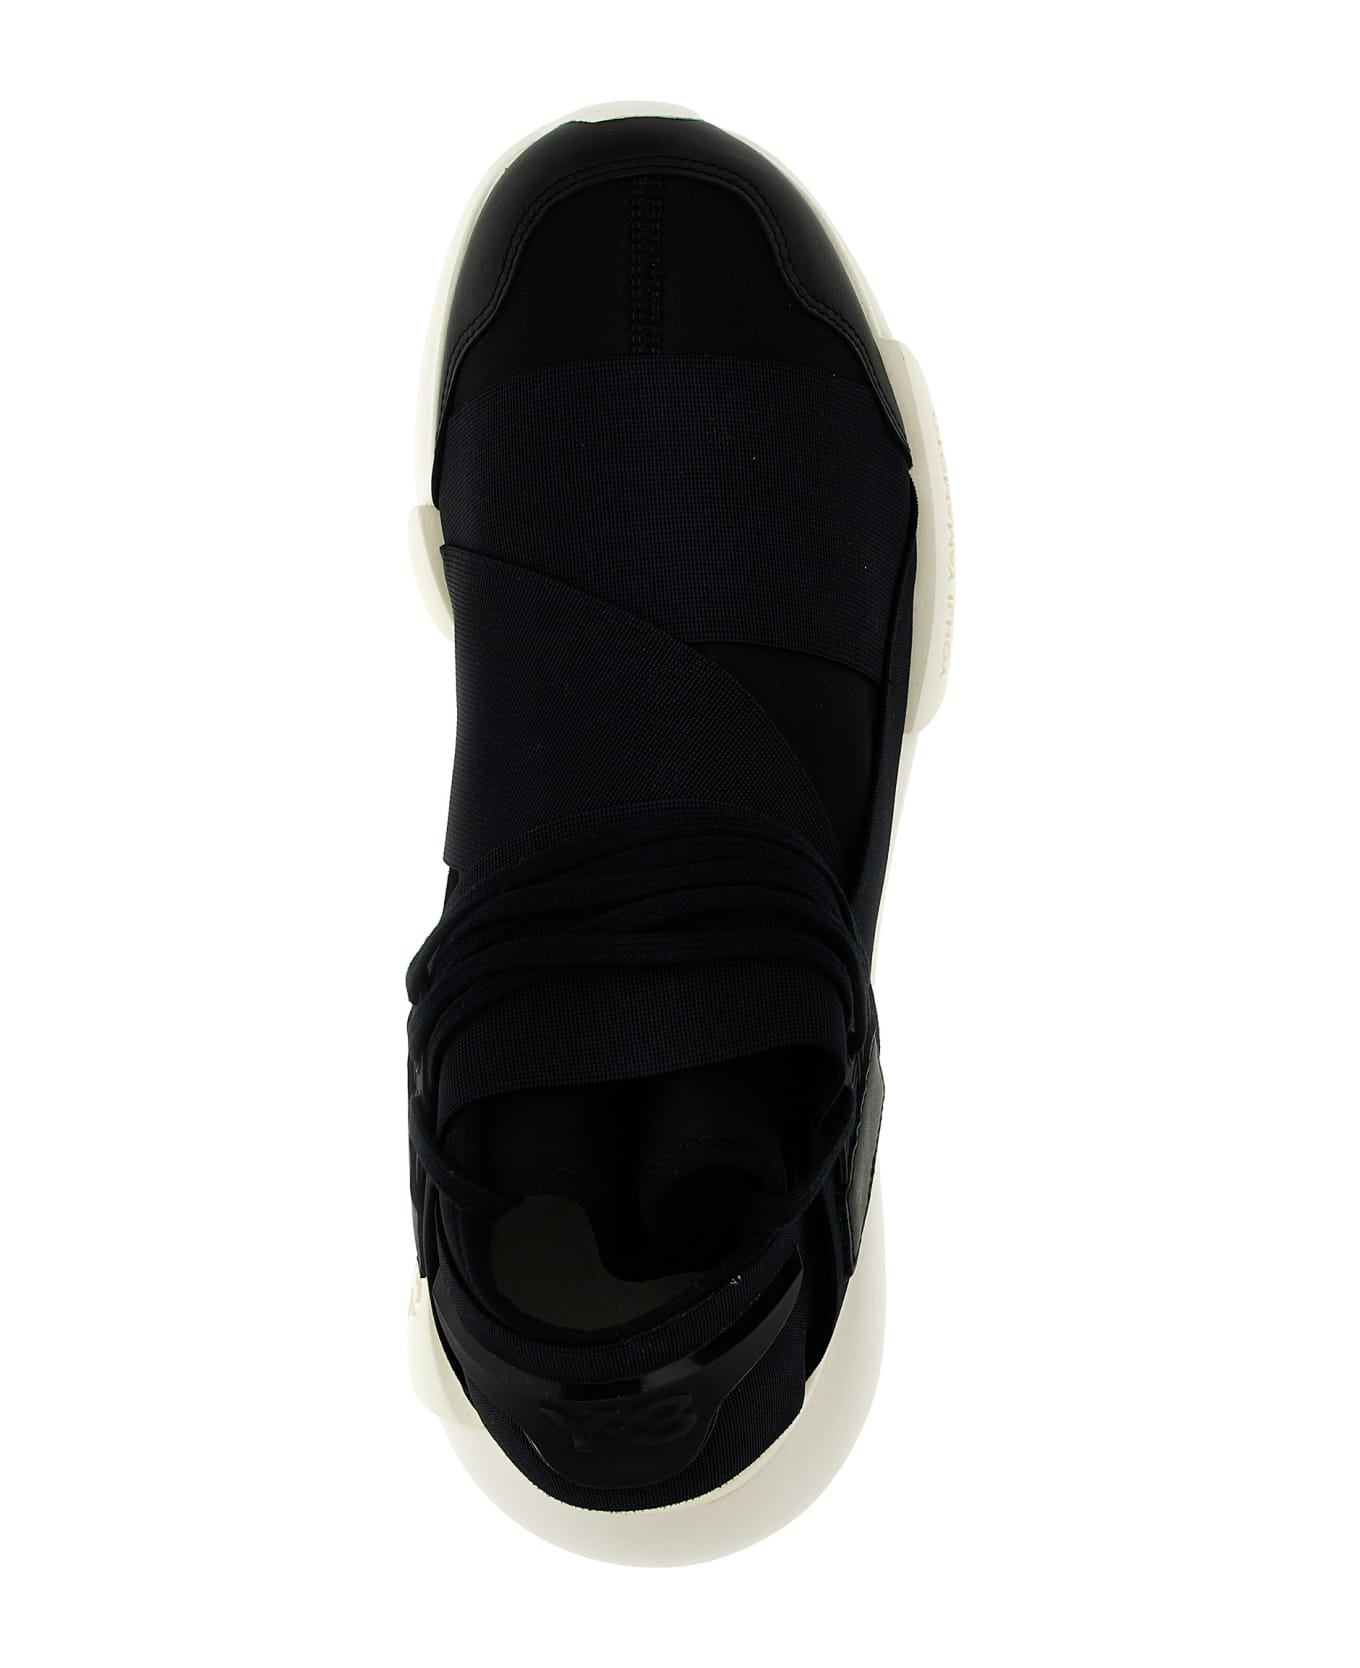 Y-3 'qasa' Sneakers Sneakers - BLACK